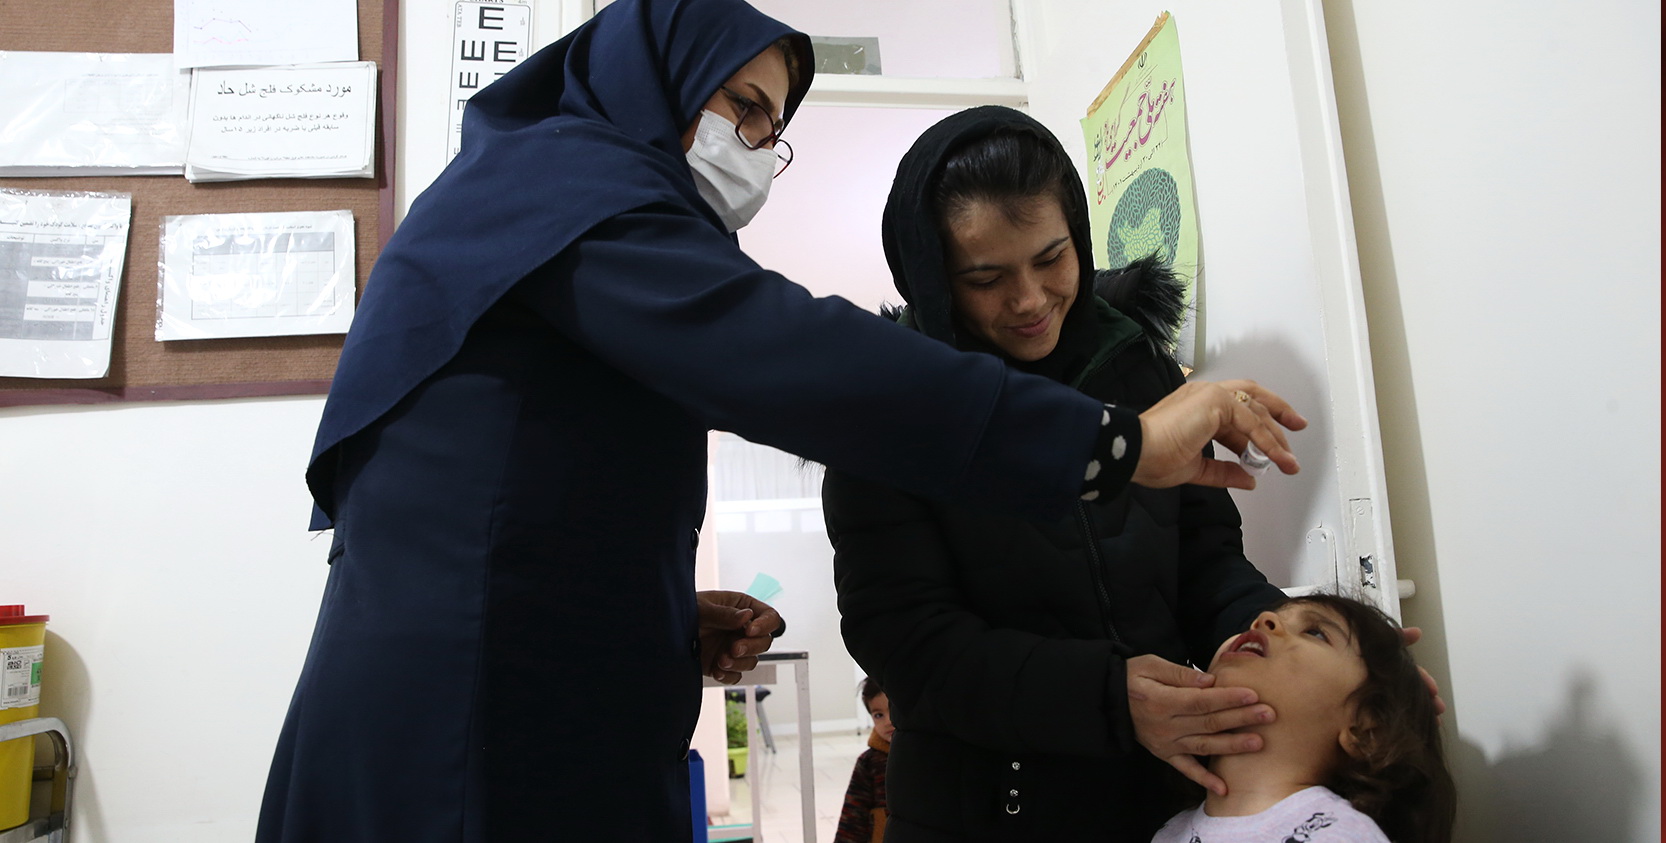   کمپین واکسیناسیون در جمعیت مهاجر خارجی 